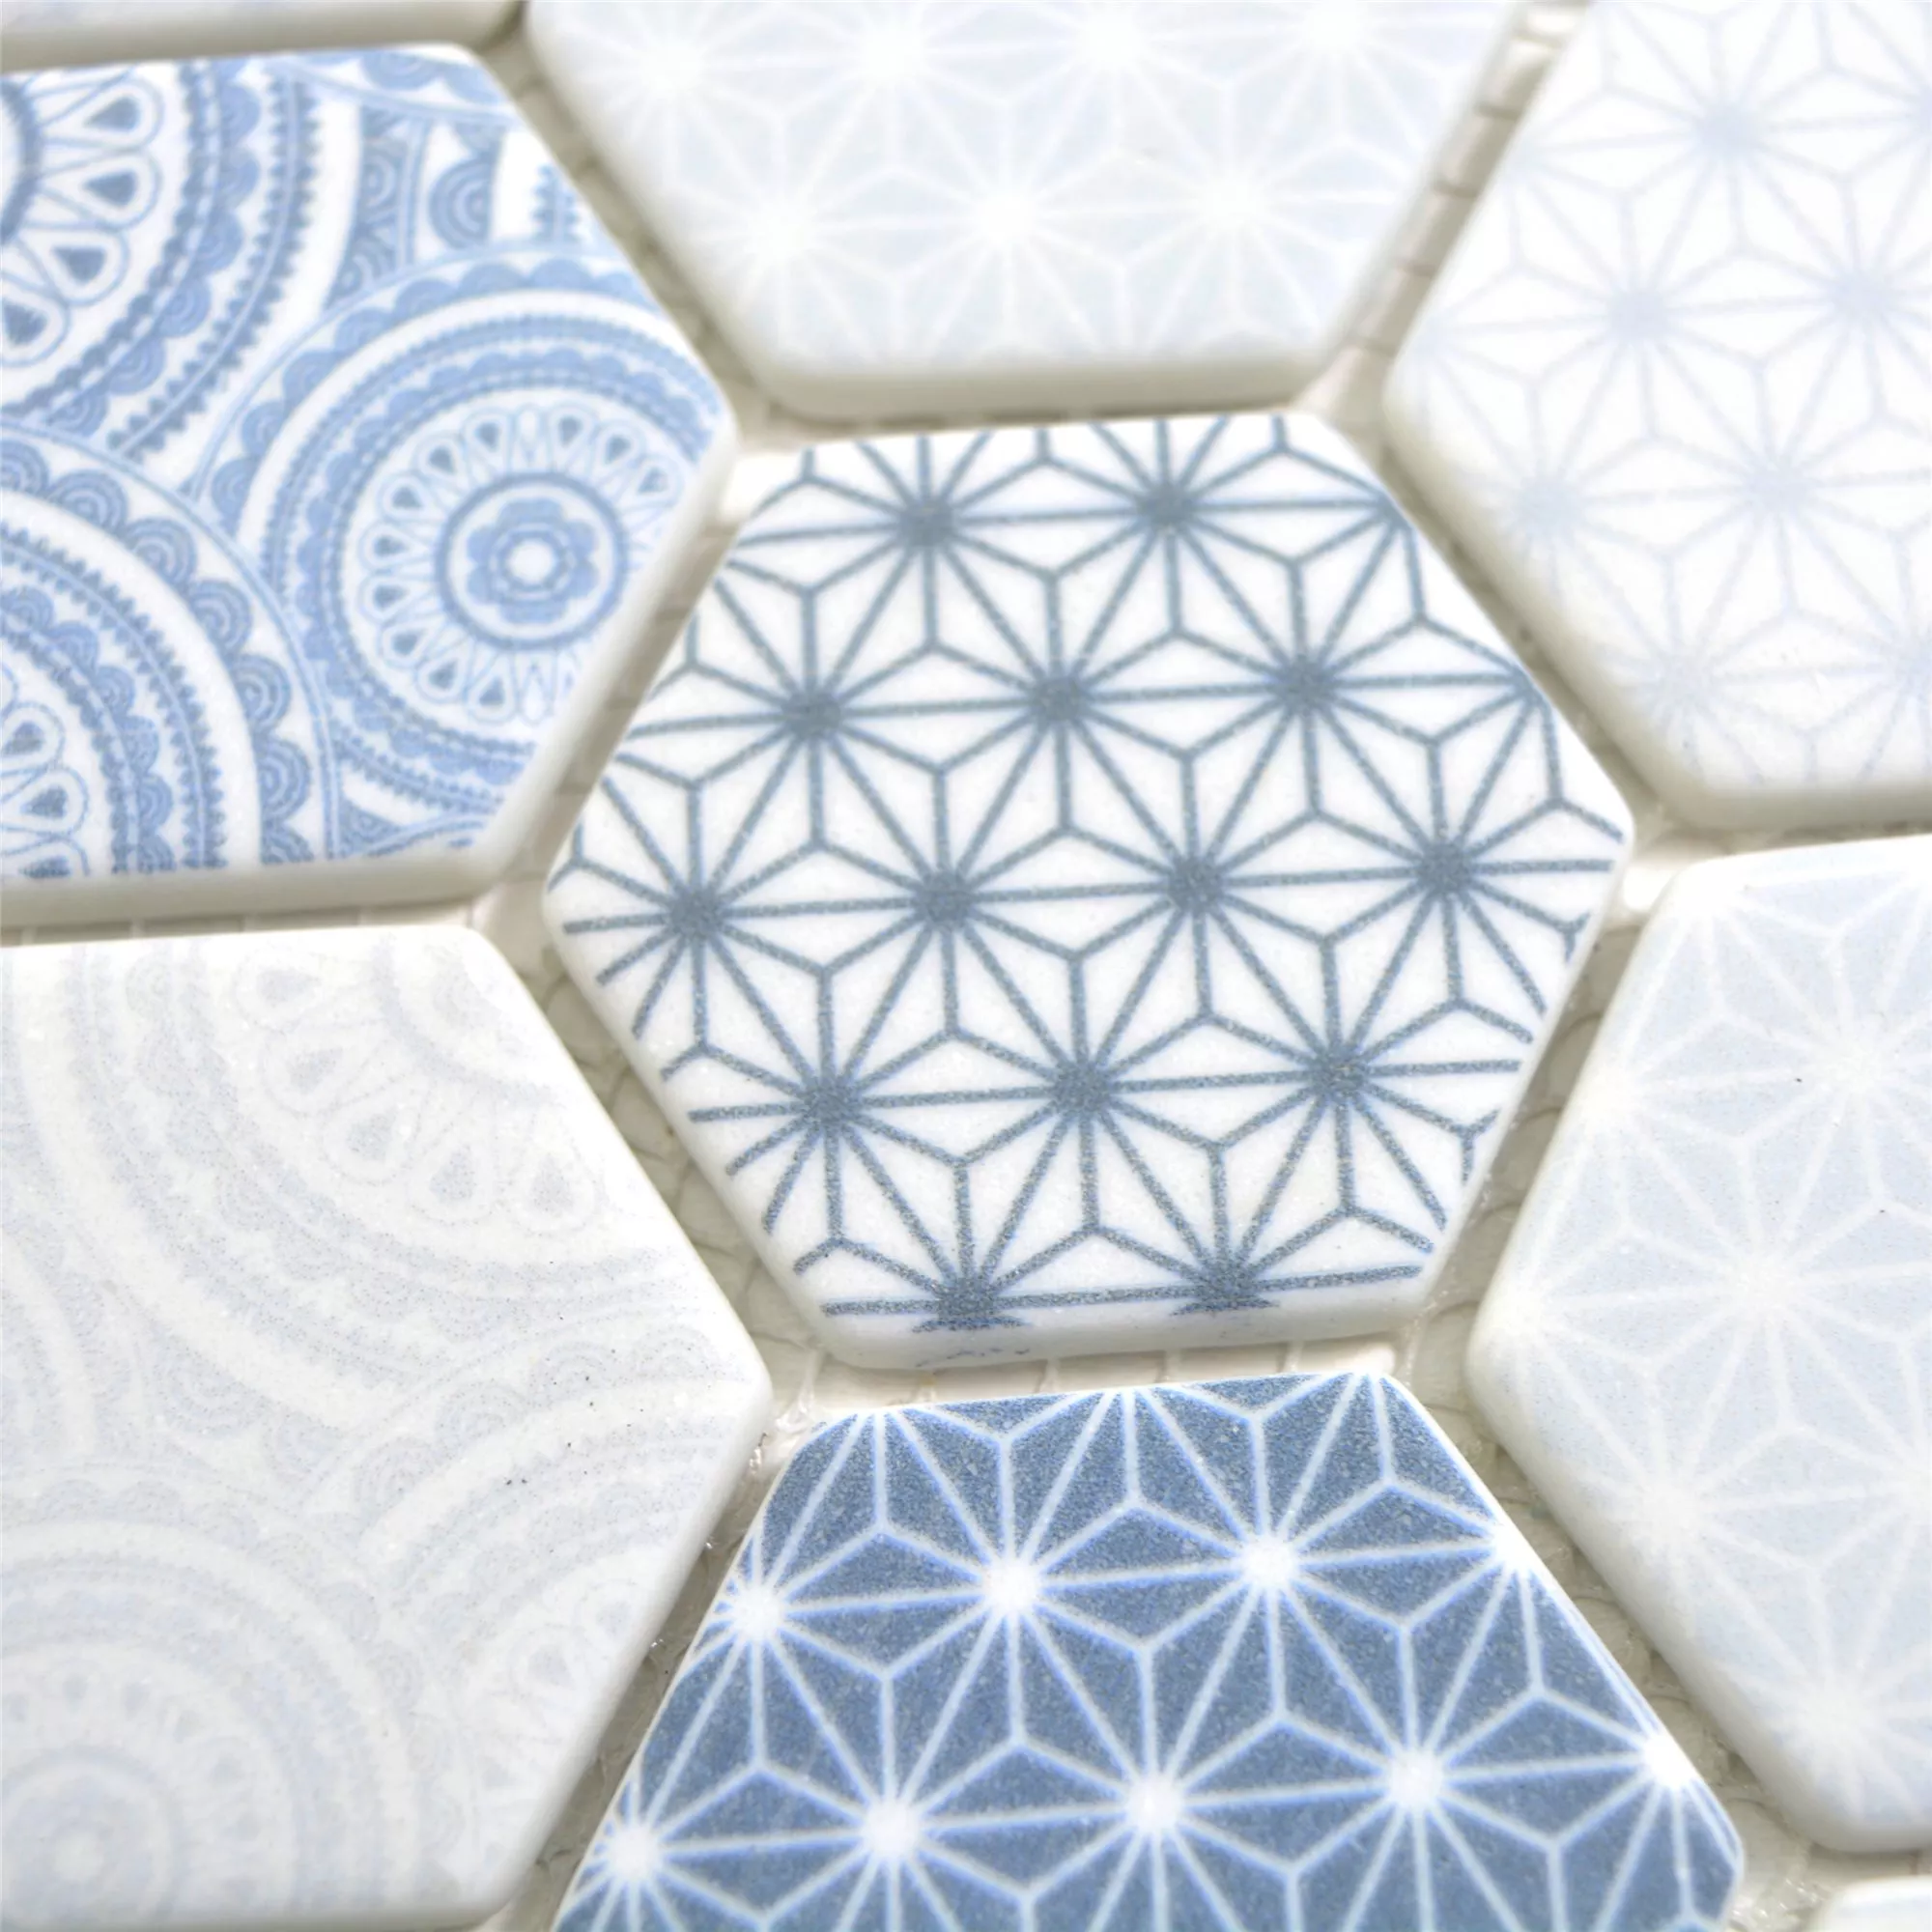 Glasmosaik Plattor Acapella Ljusblå Hexagon